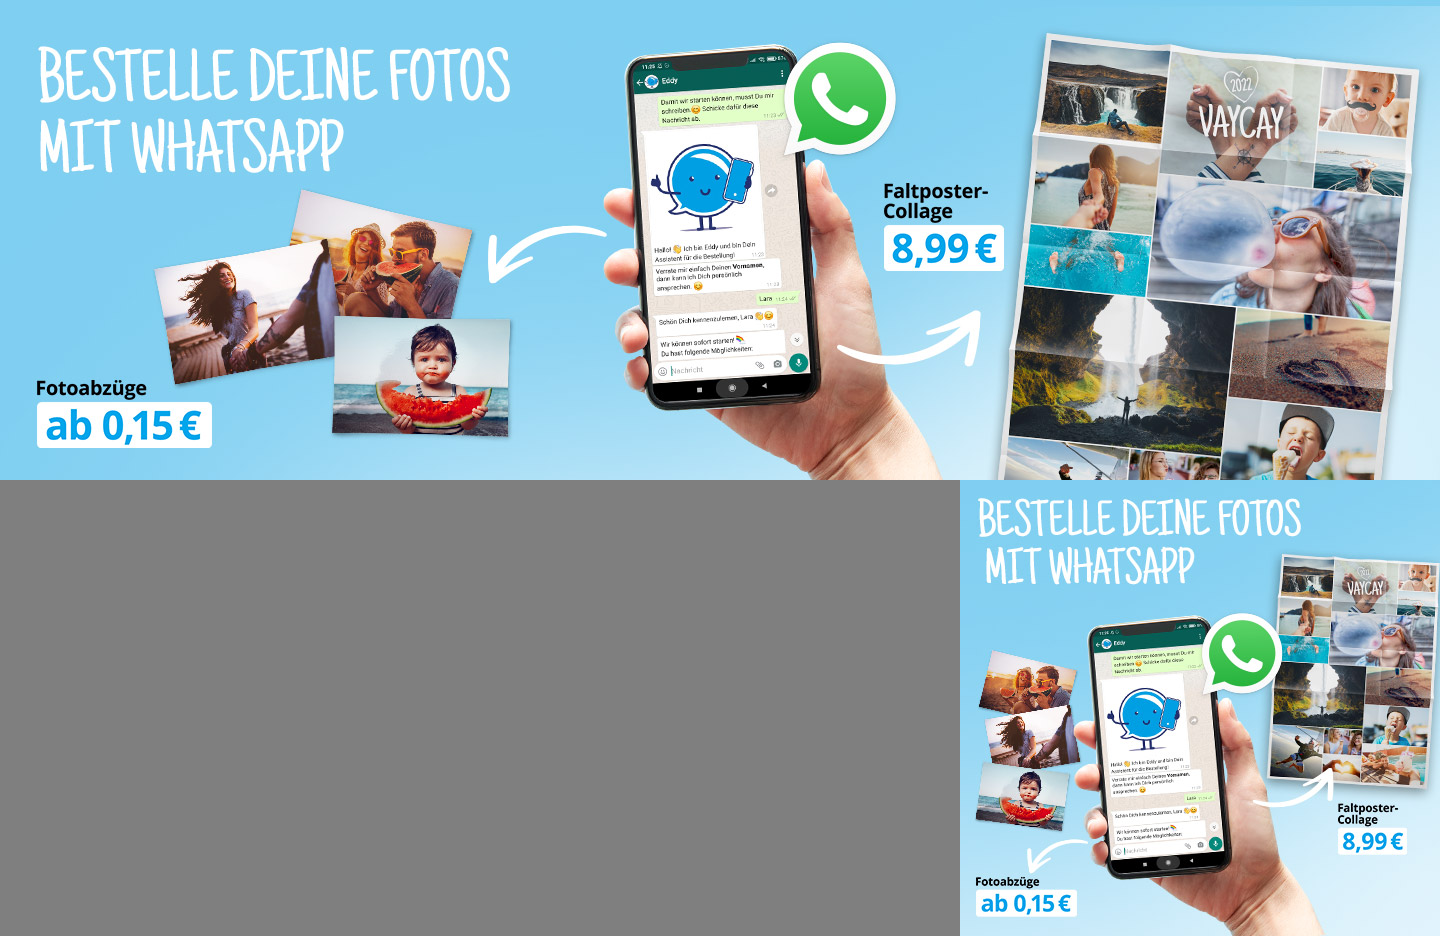 Deine Poster-Collage mit WhatsApp bestellen!